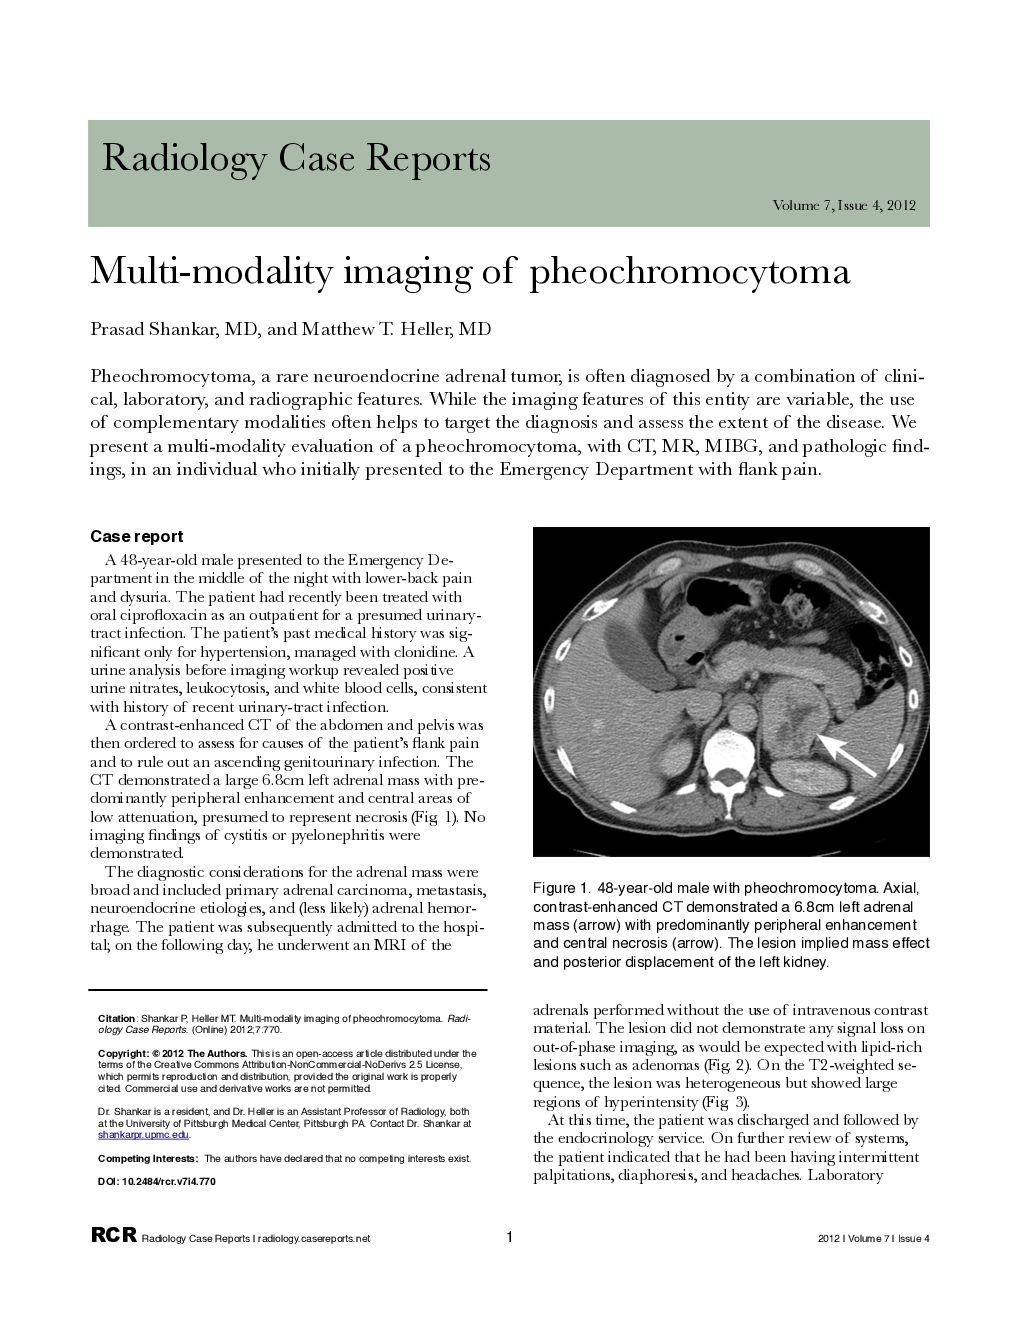 Multi-modality imaging of pheochromocytoma